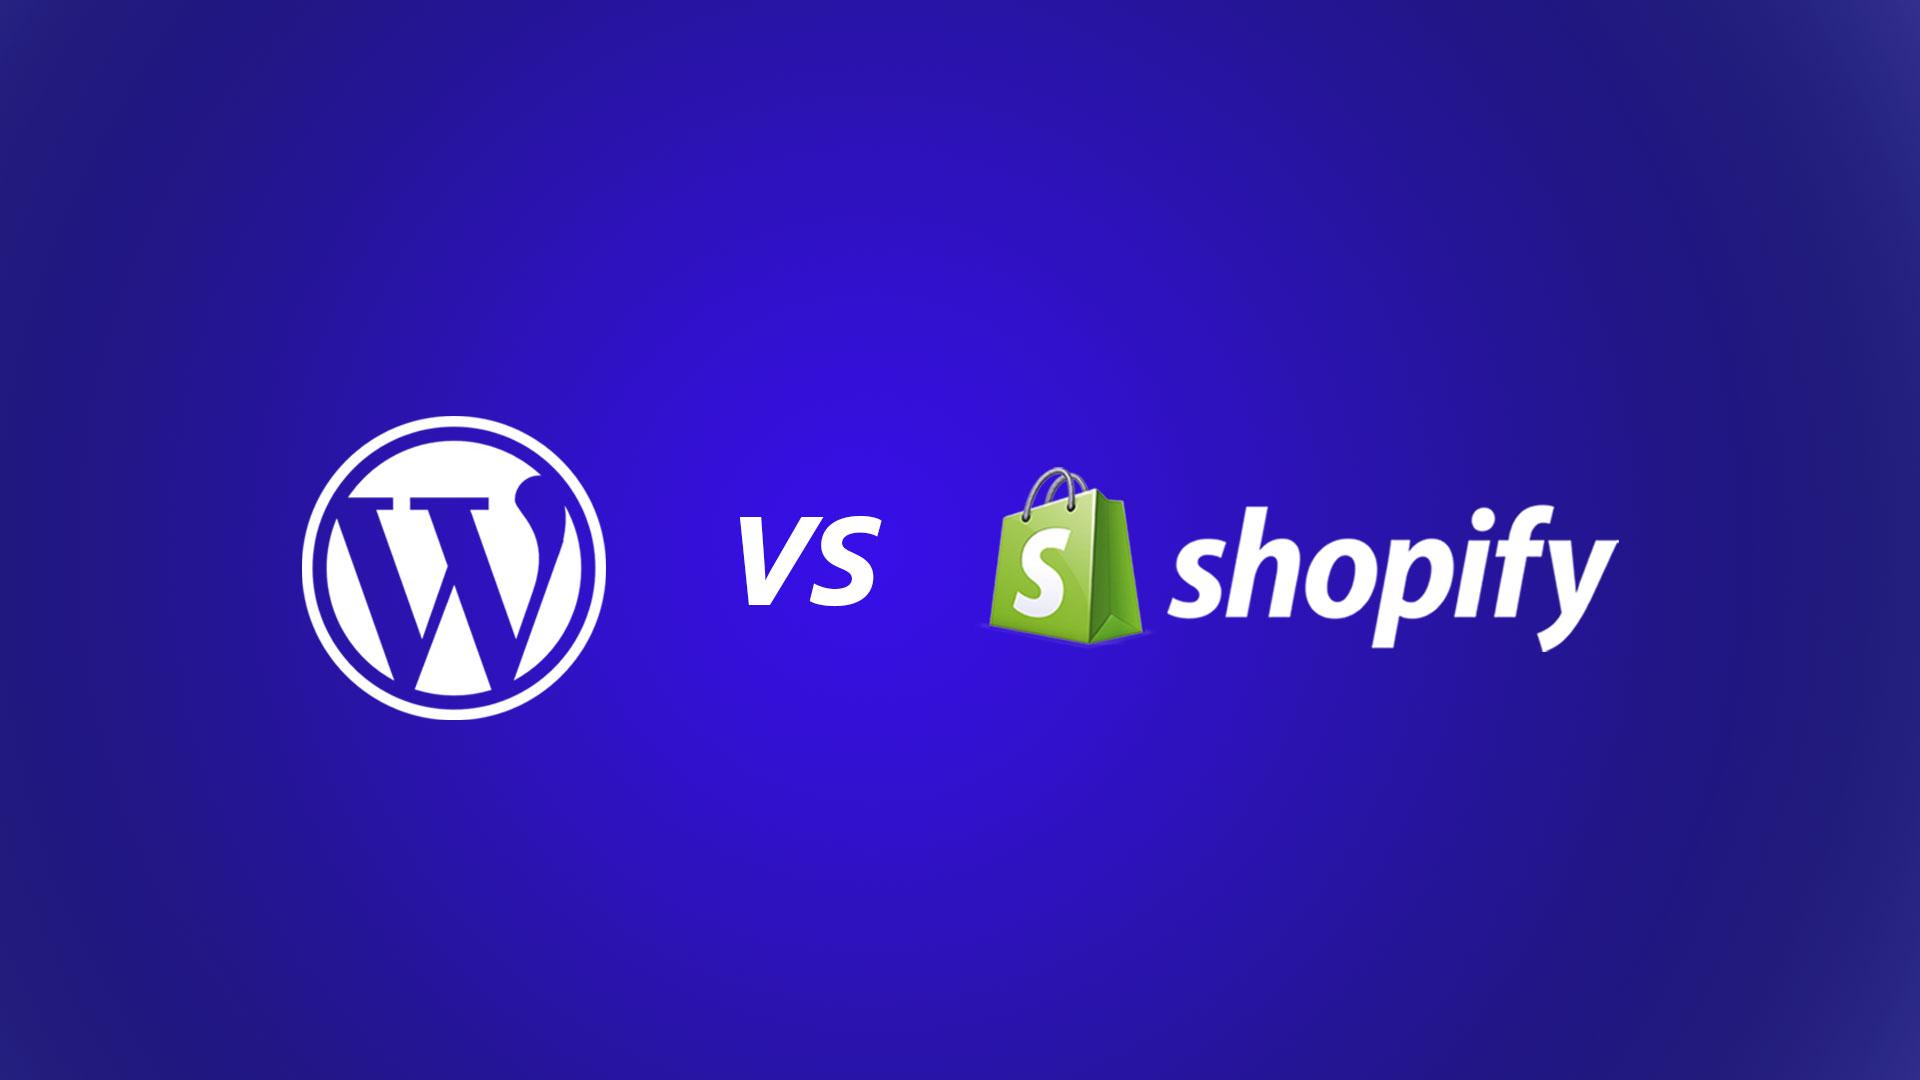  Shopify vs. WordPress - hvilken webshop skal jeg vælge